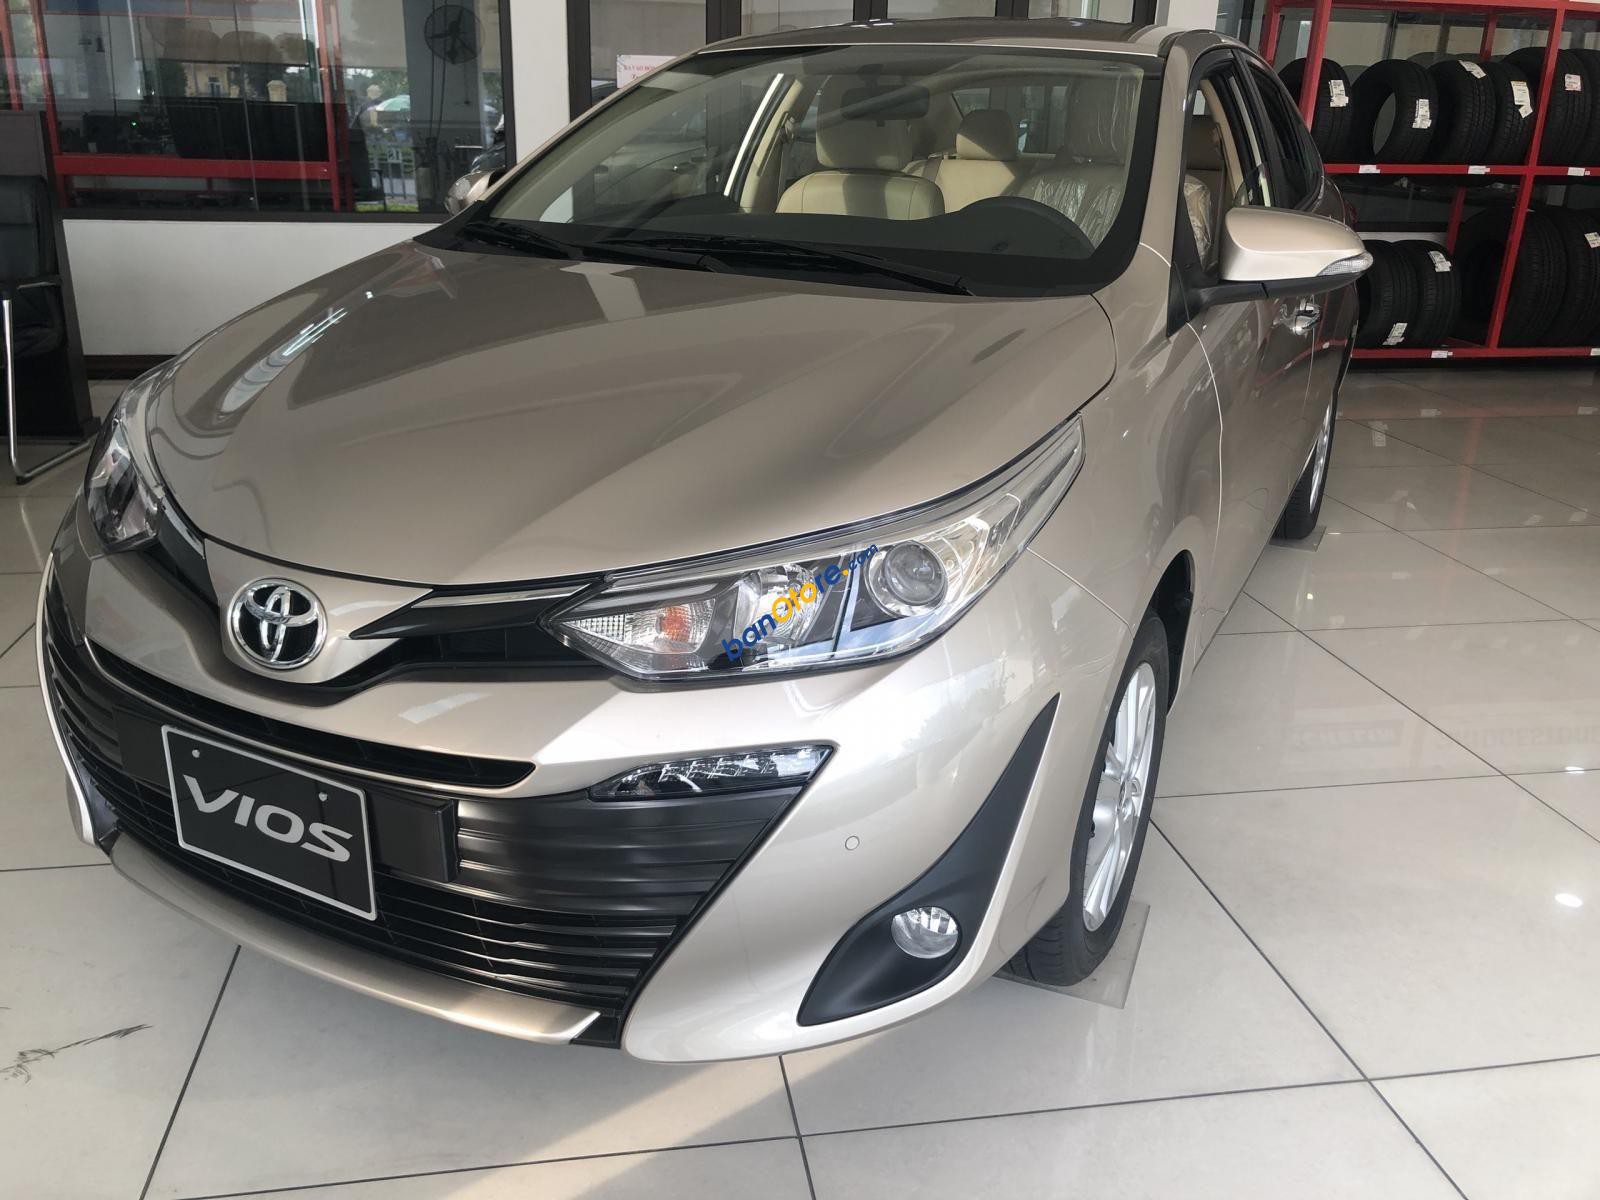 Bán Toyota Vios 1.5MT - Toyota Nam Định, chương trình khuyến mãi tốt, lăn bánh chỉ 128 triệu hỗ trợ lái thử, giao xe tận nhà, lãi suất thấp ưu đãi hấp dẫn nhất Nam Định